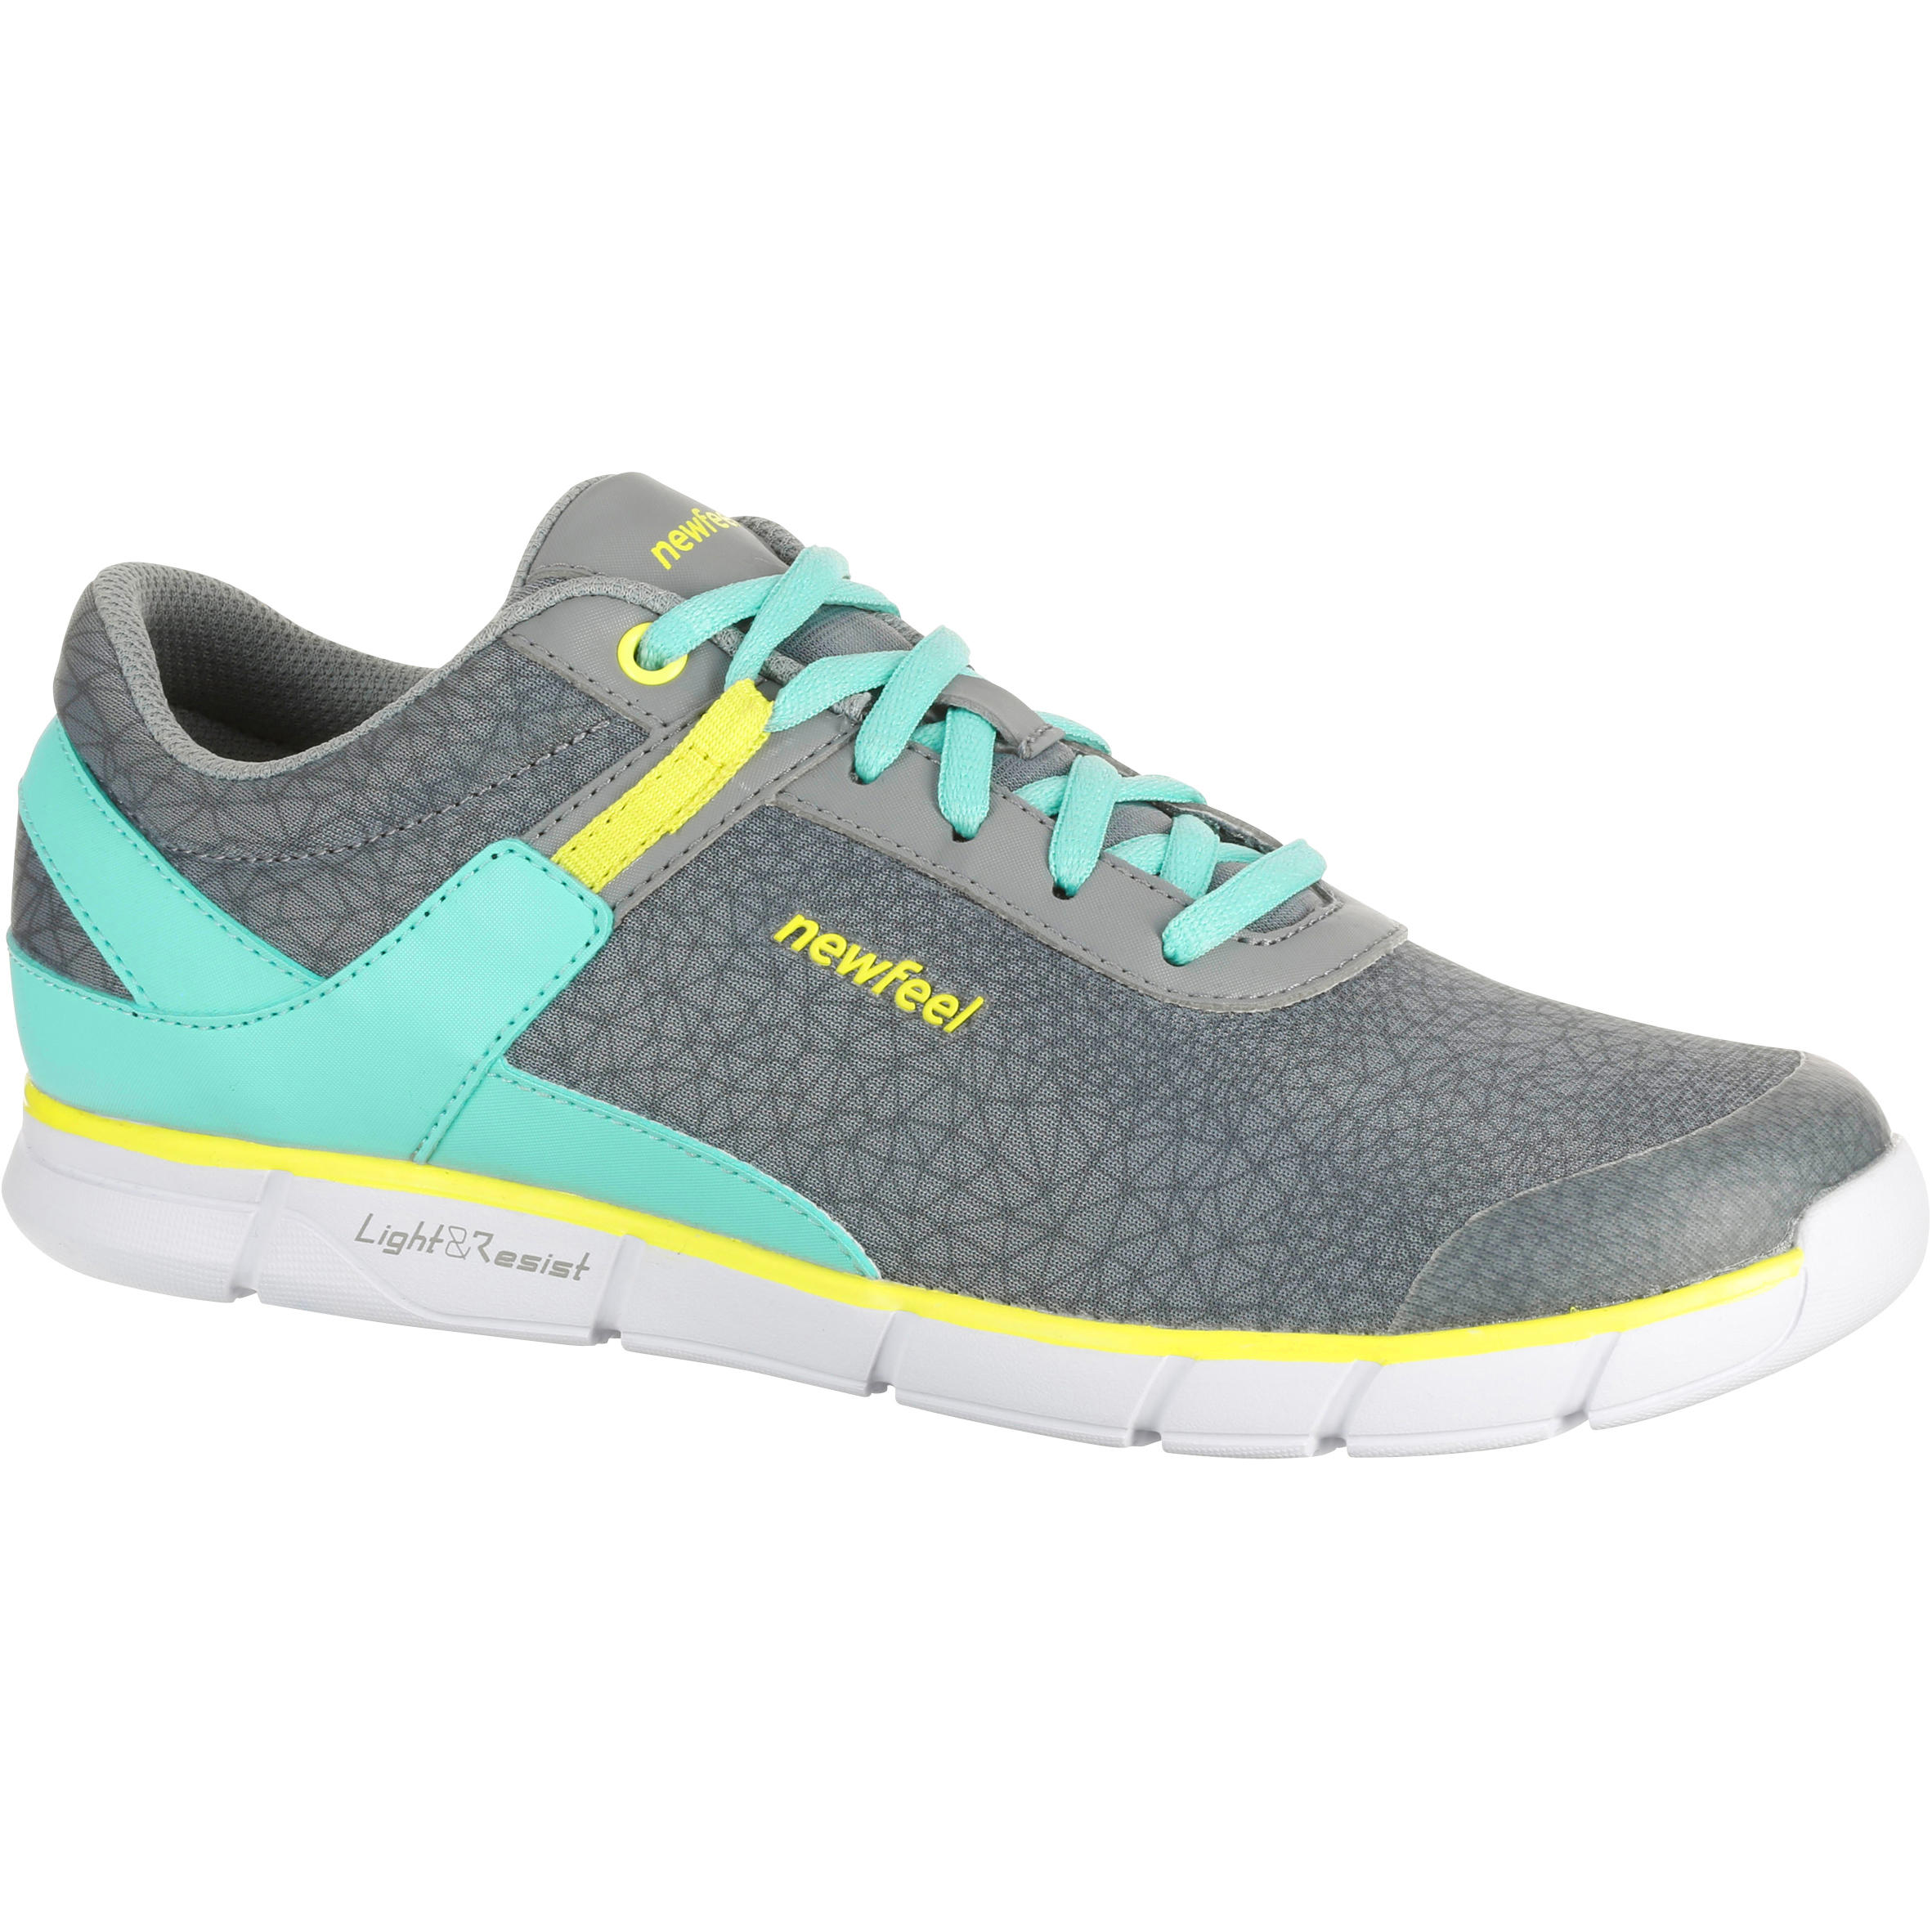 NEWFEEL Soft 540 Women's Fitness Walking Shoes - Grey/Yellow/Blue